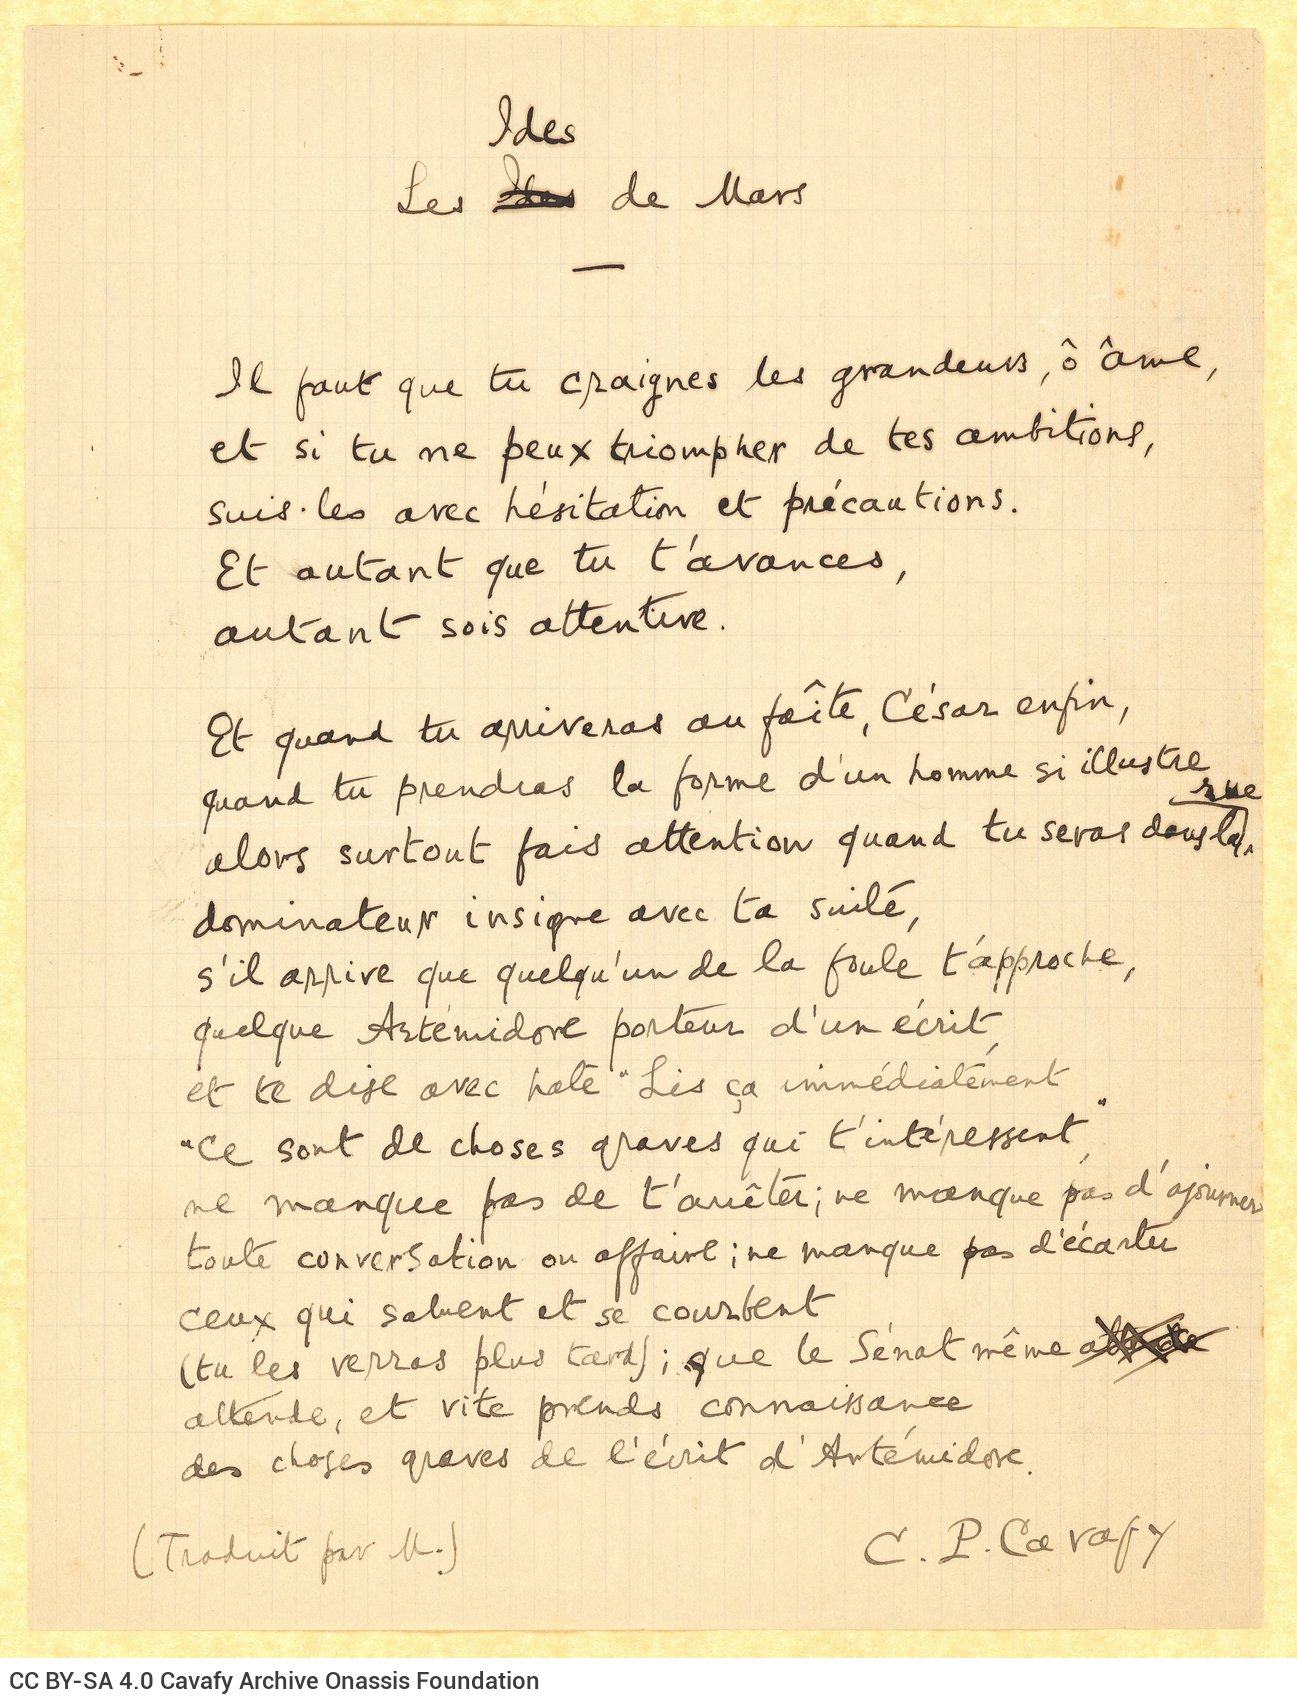 Χειρόγραφο κείμενο στα γαλλικά. Πρόκειται για μετάφραση του ποιήμ�